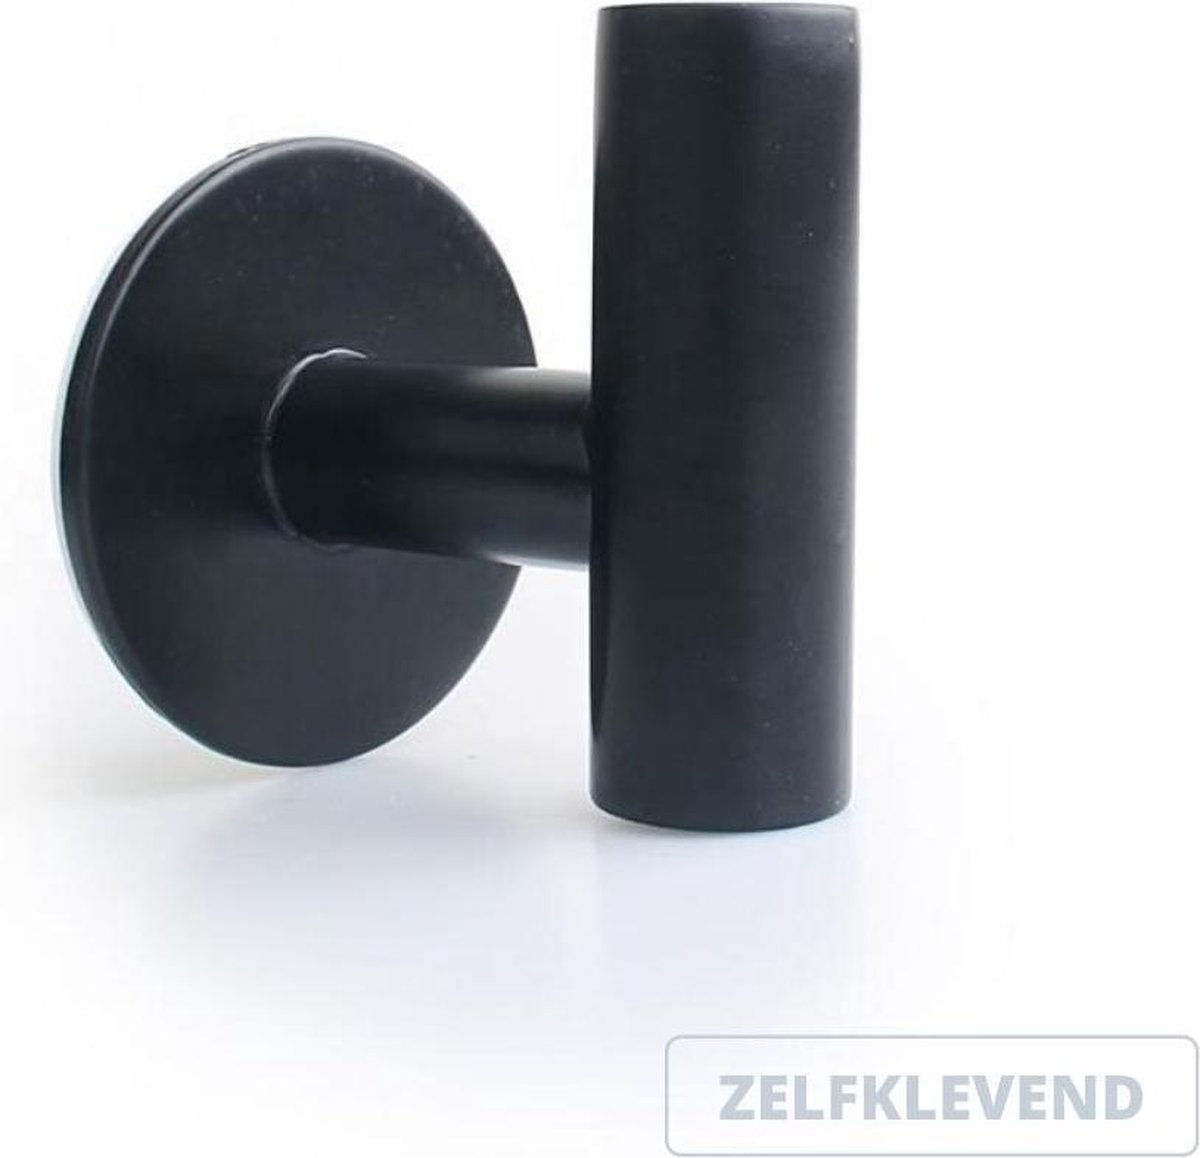 Handdoekhaak zwart zelfklevend - set van 2 - rvs - rond